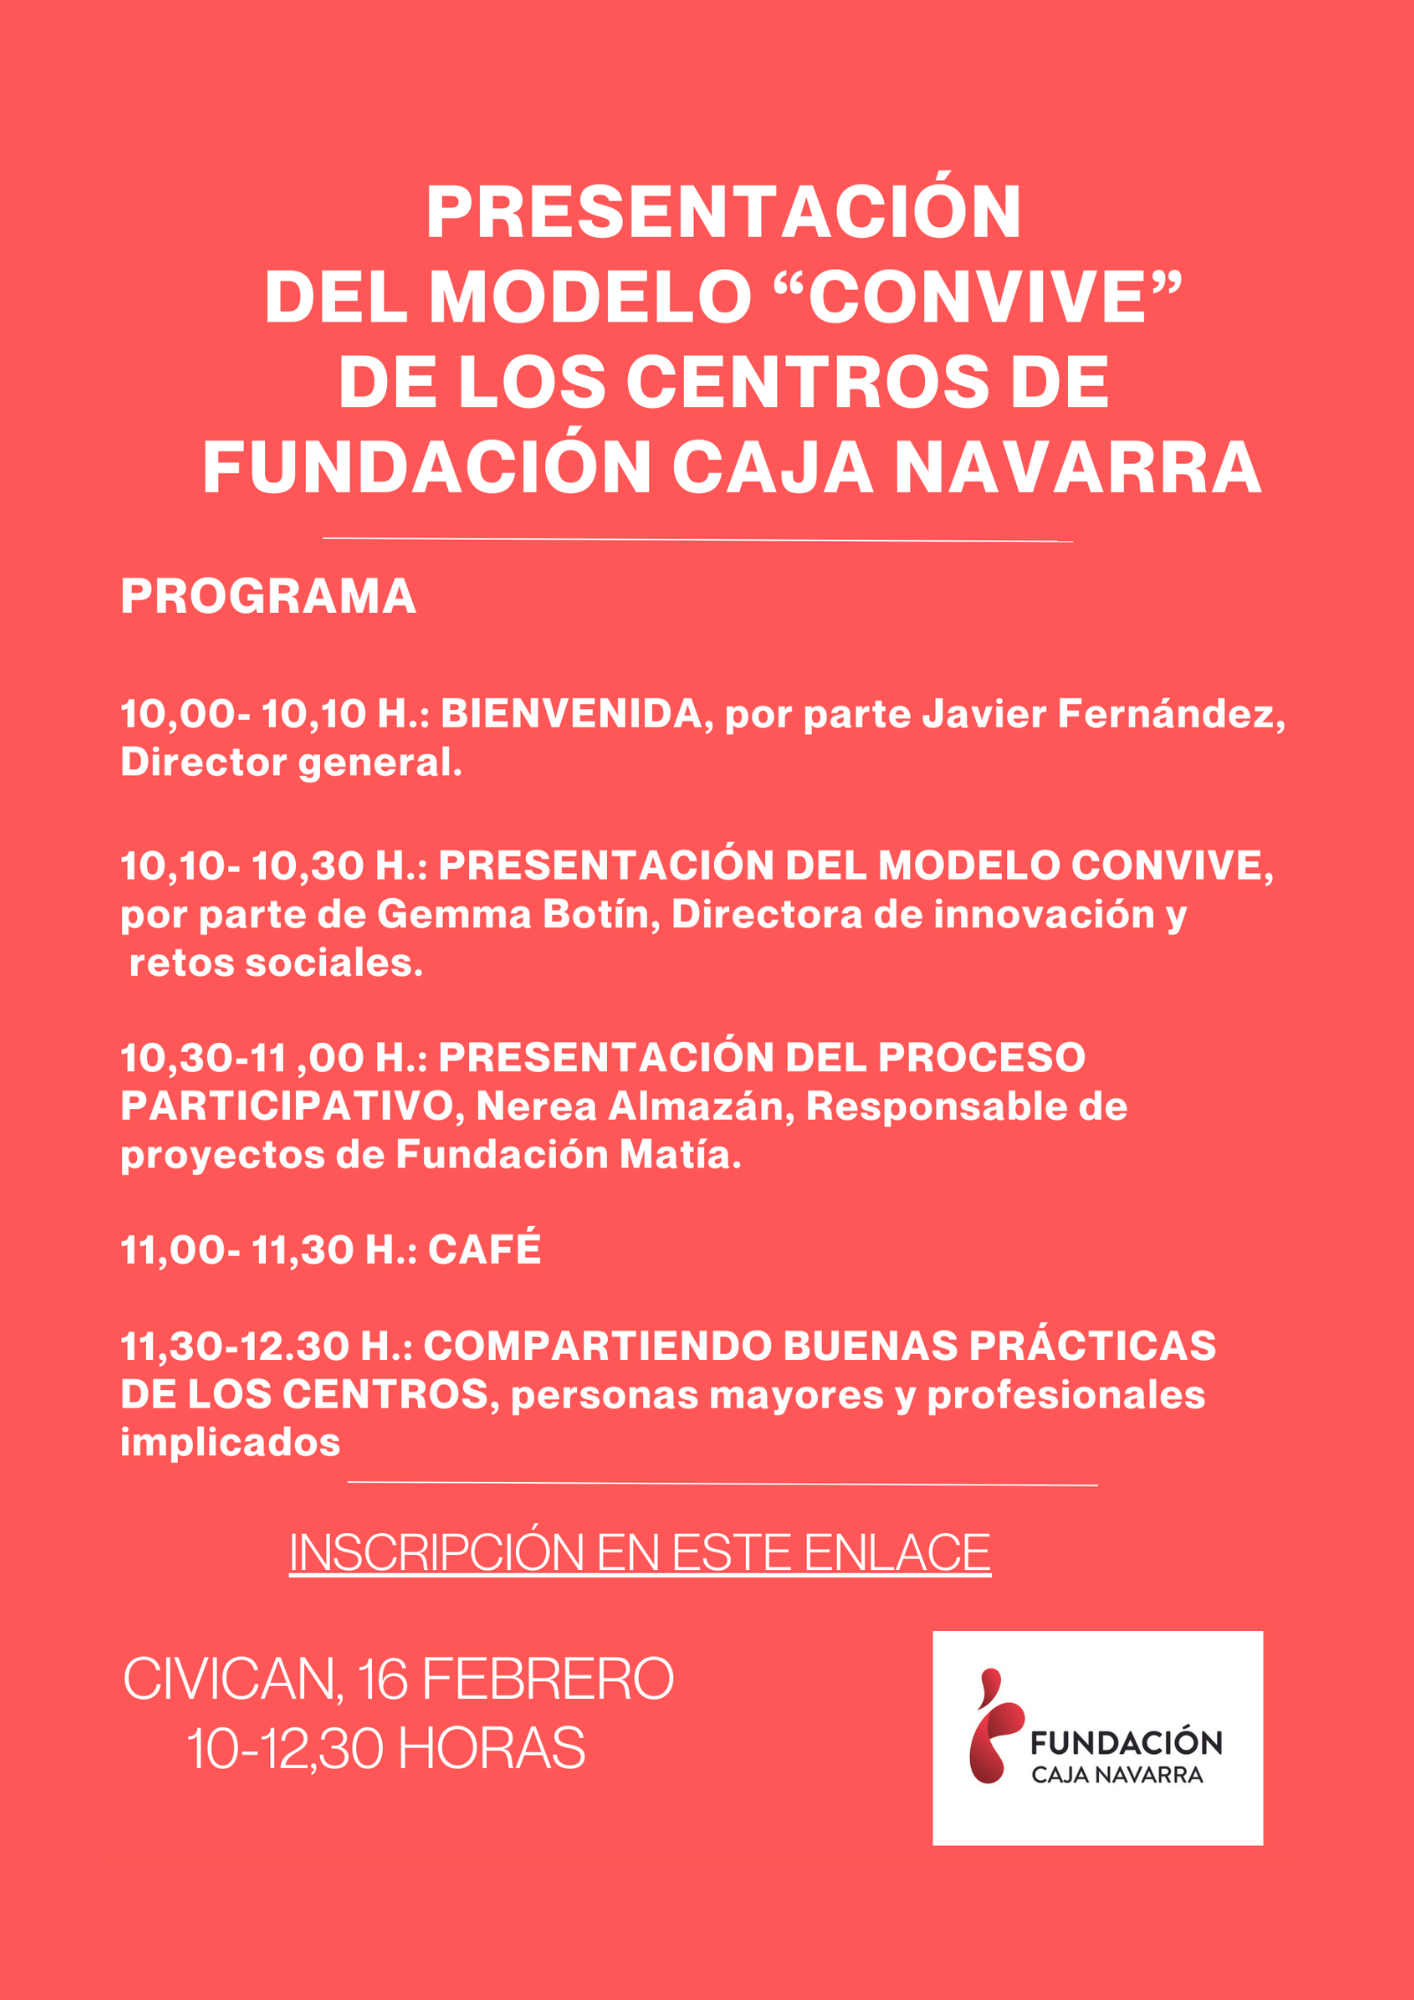 Cartel anunciador de la Jornada de presentación del modelo CONVIVE de Fundación Caja Navarra